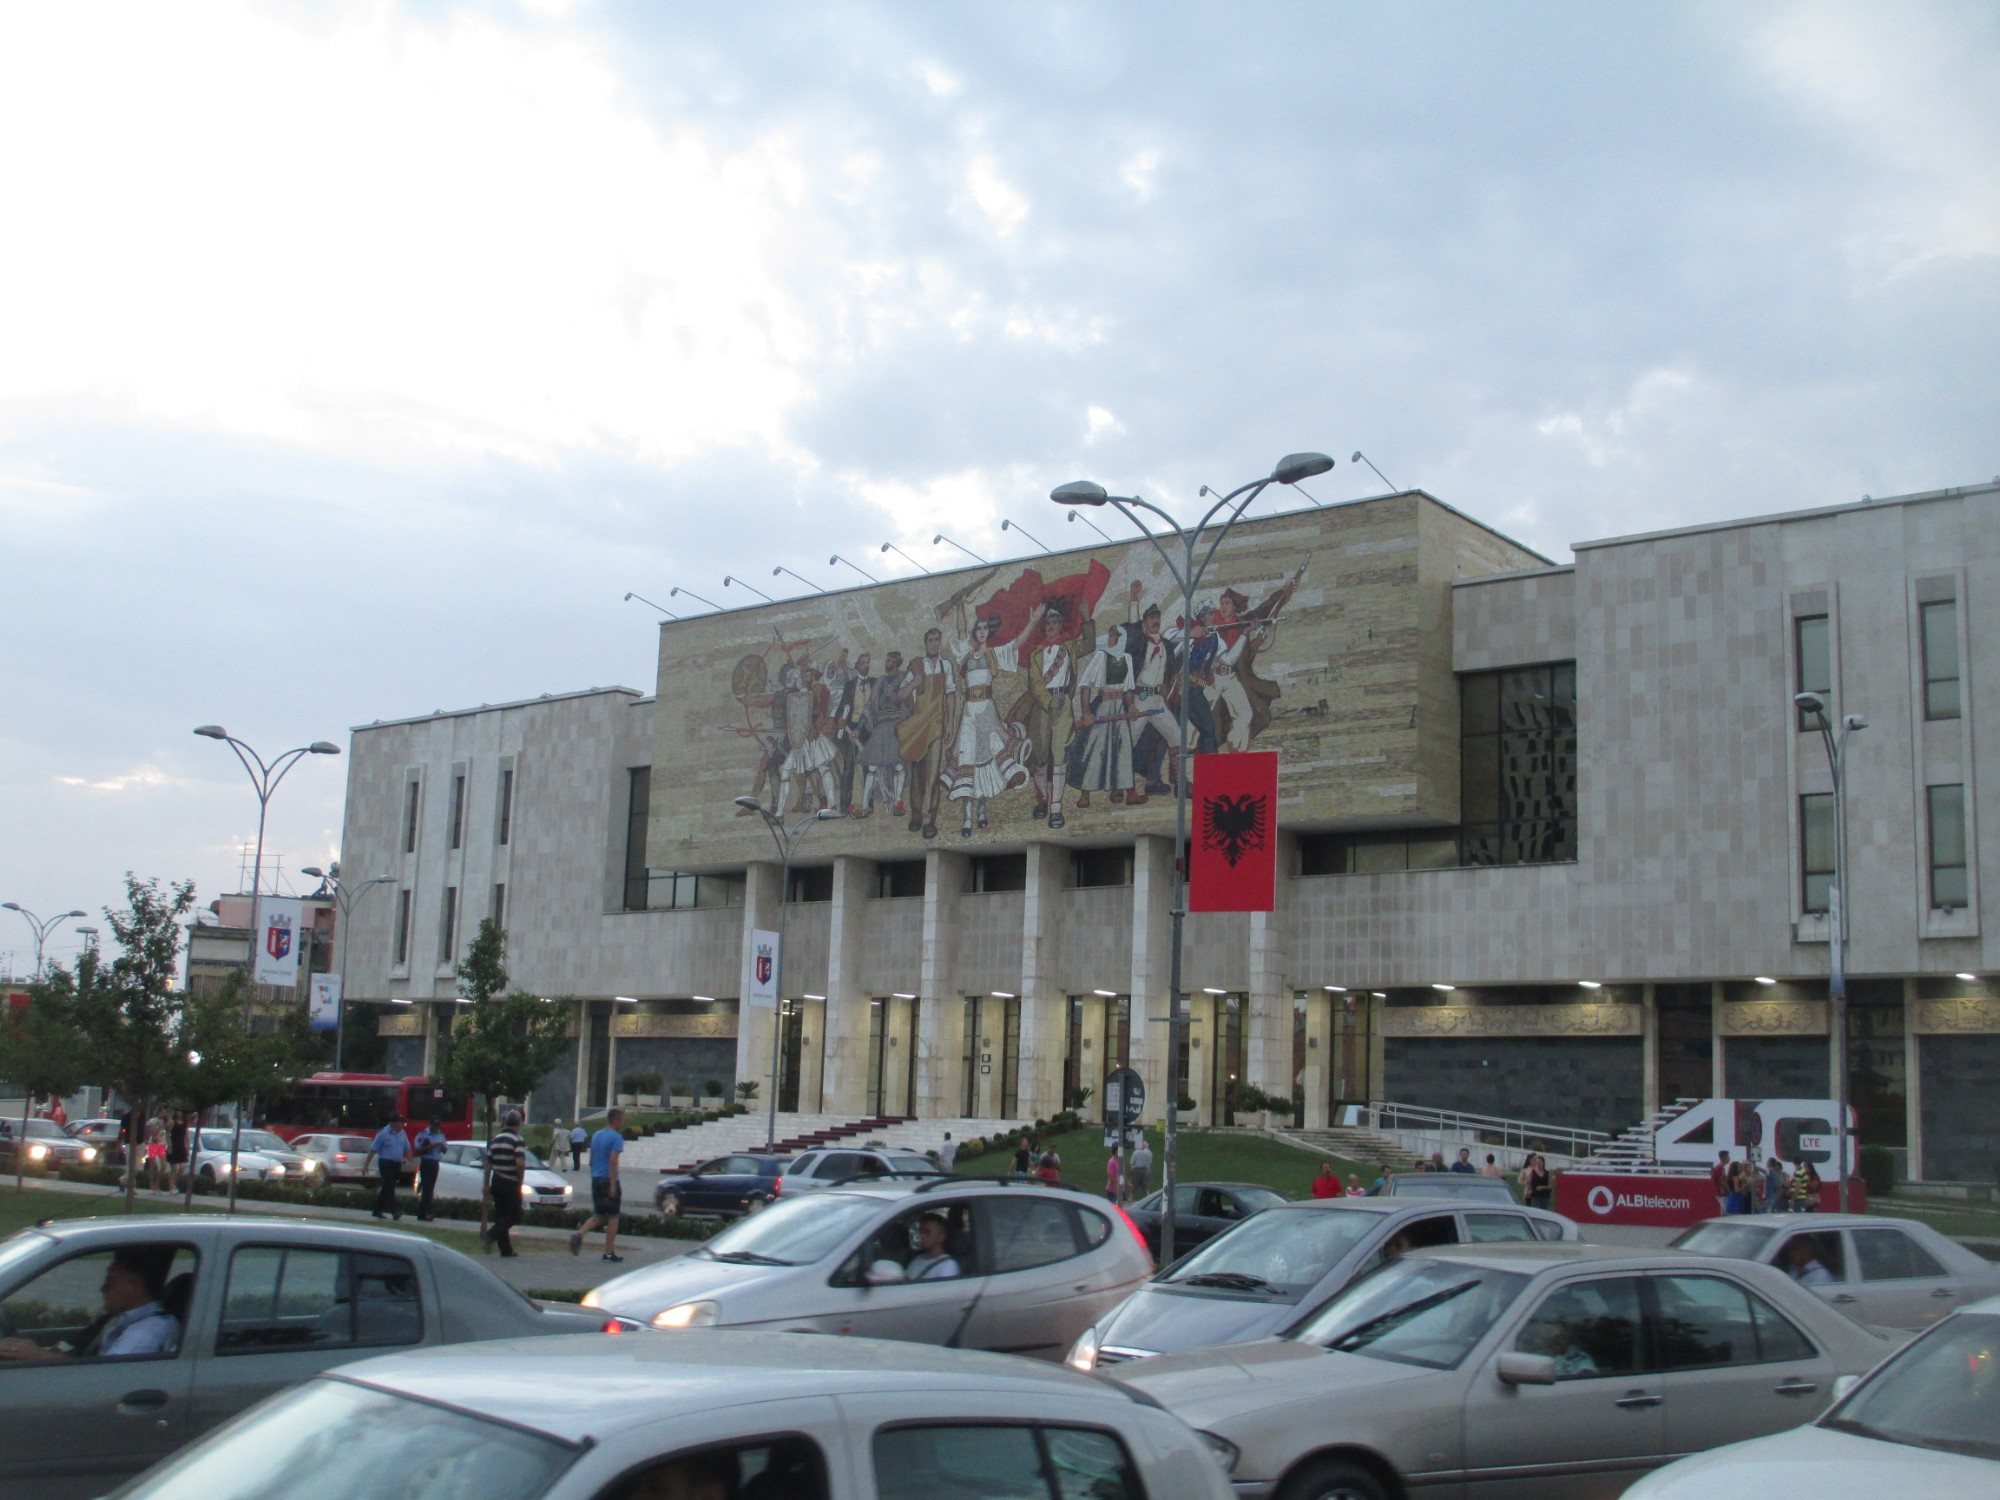 Тирана. Здание национального исторического музея. (05.09.2015)